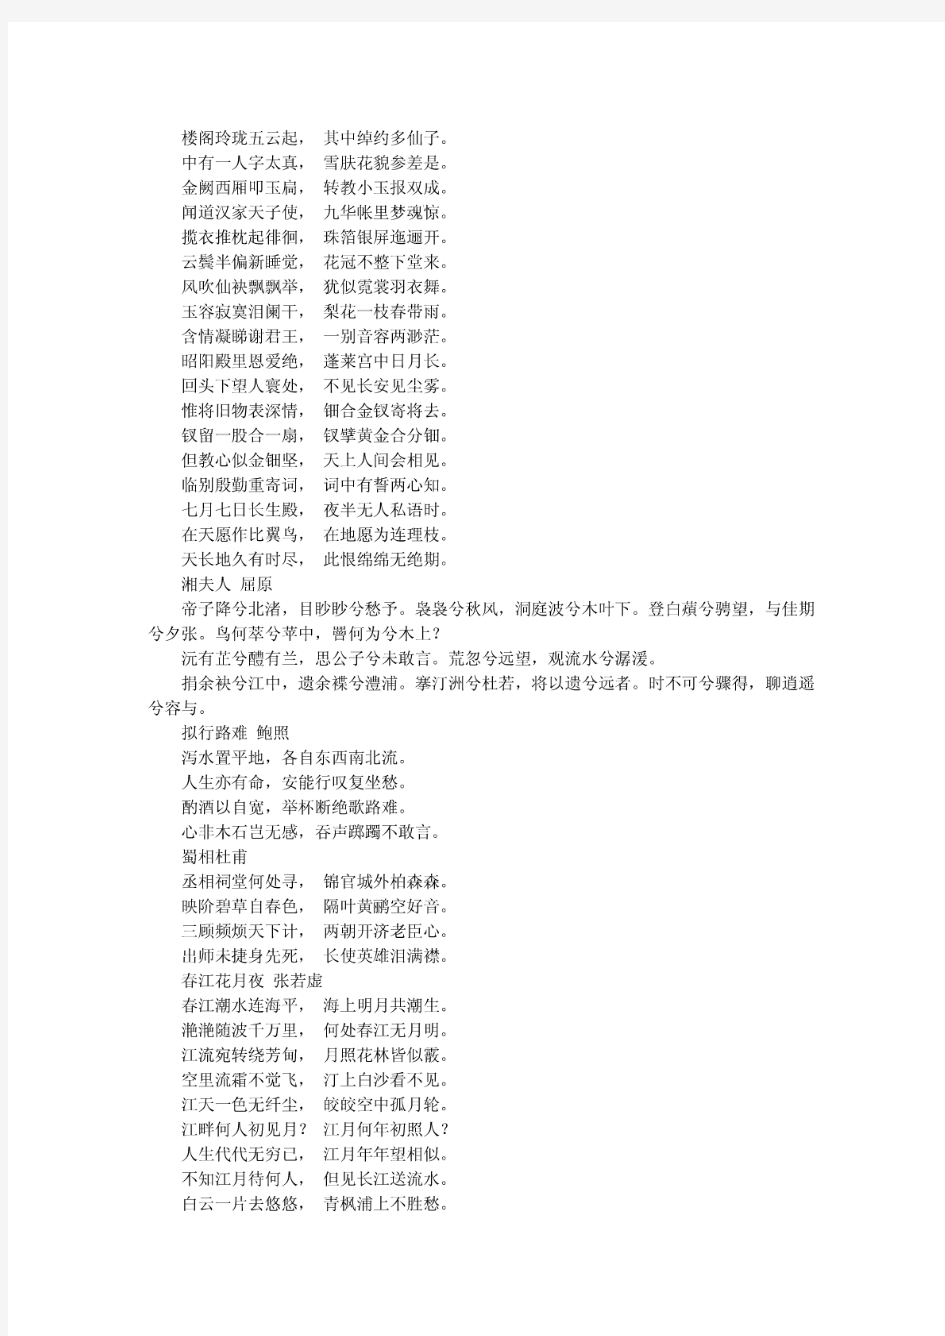 语文中国古代诗歌散文欣赏背诵篇目